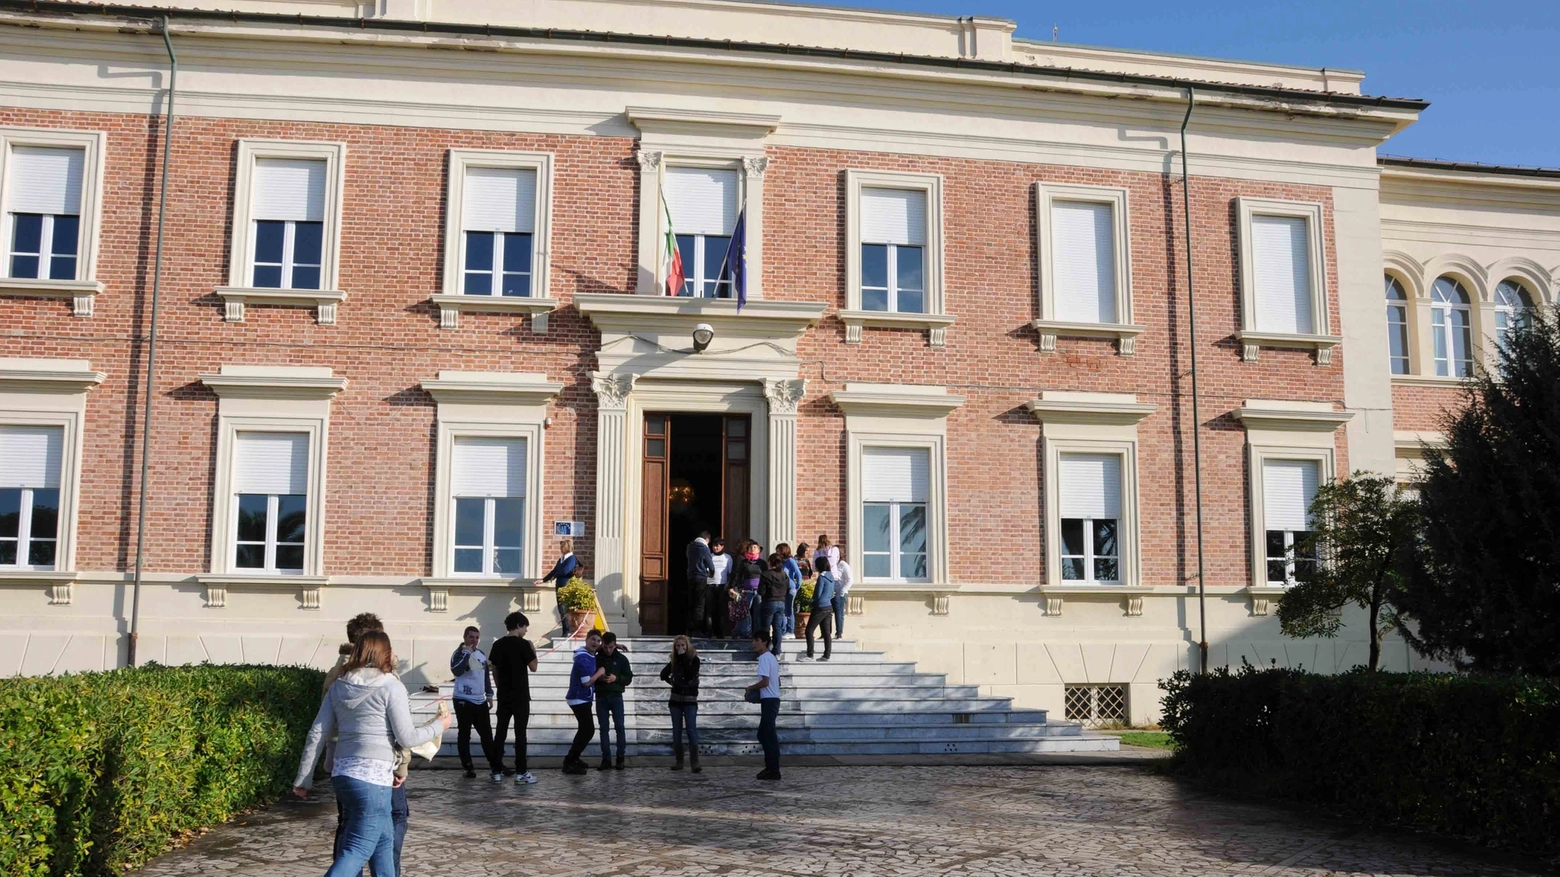 La Regione Toscana ha promesso un "aiuto" di 25mila euro ma "non saranno sufficienti". Ne servirebbero almeno 700mila